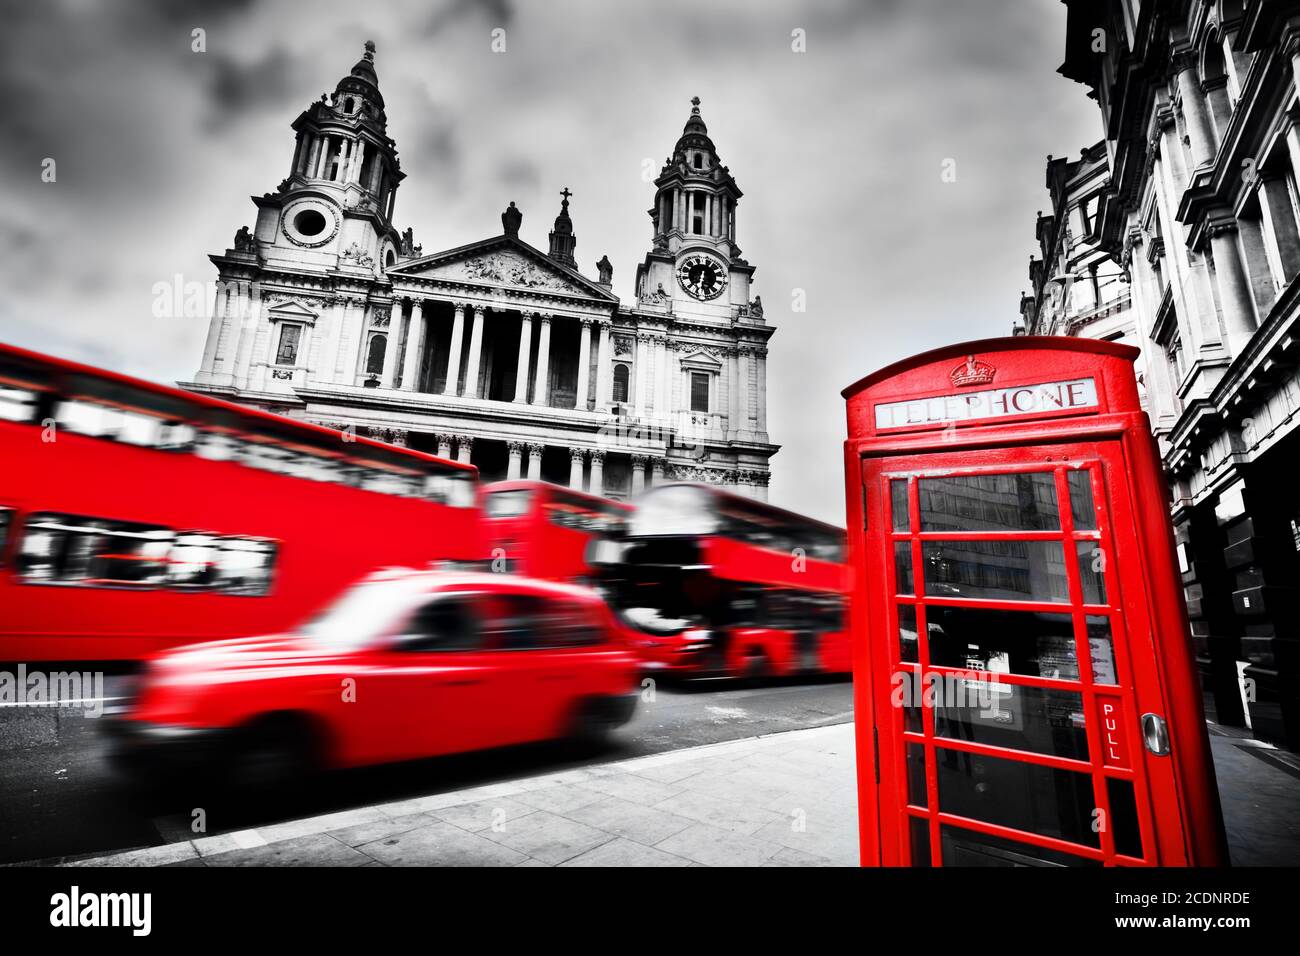 Londra, il Regno Unito. Cattedrale di St Paul 39, autobus rosso, taxi e cabina telefonica rossa. Foto Stock